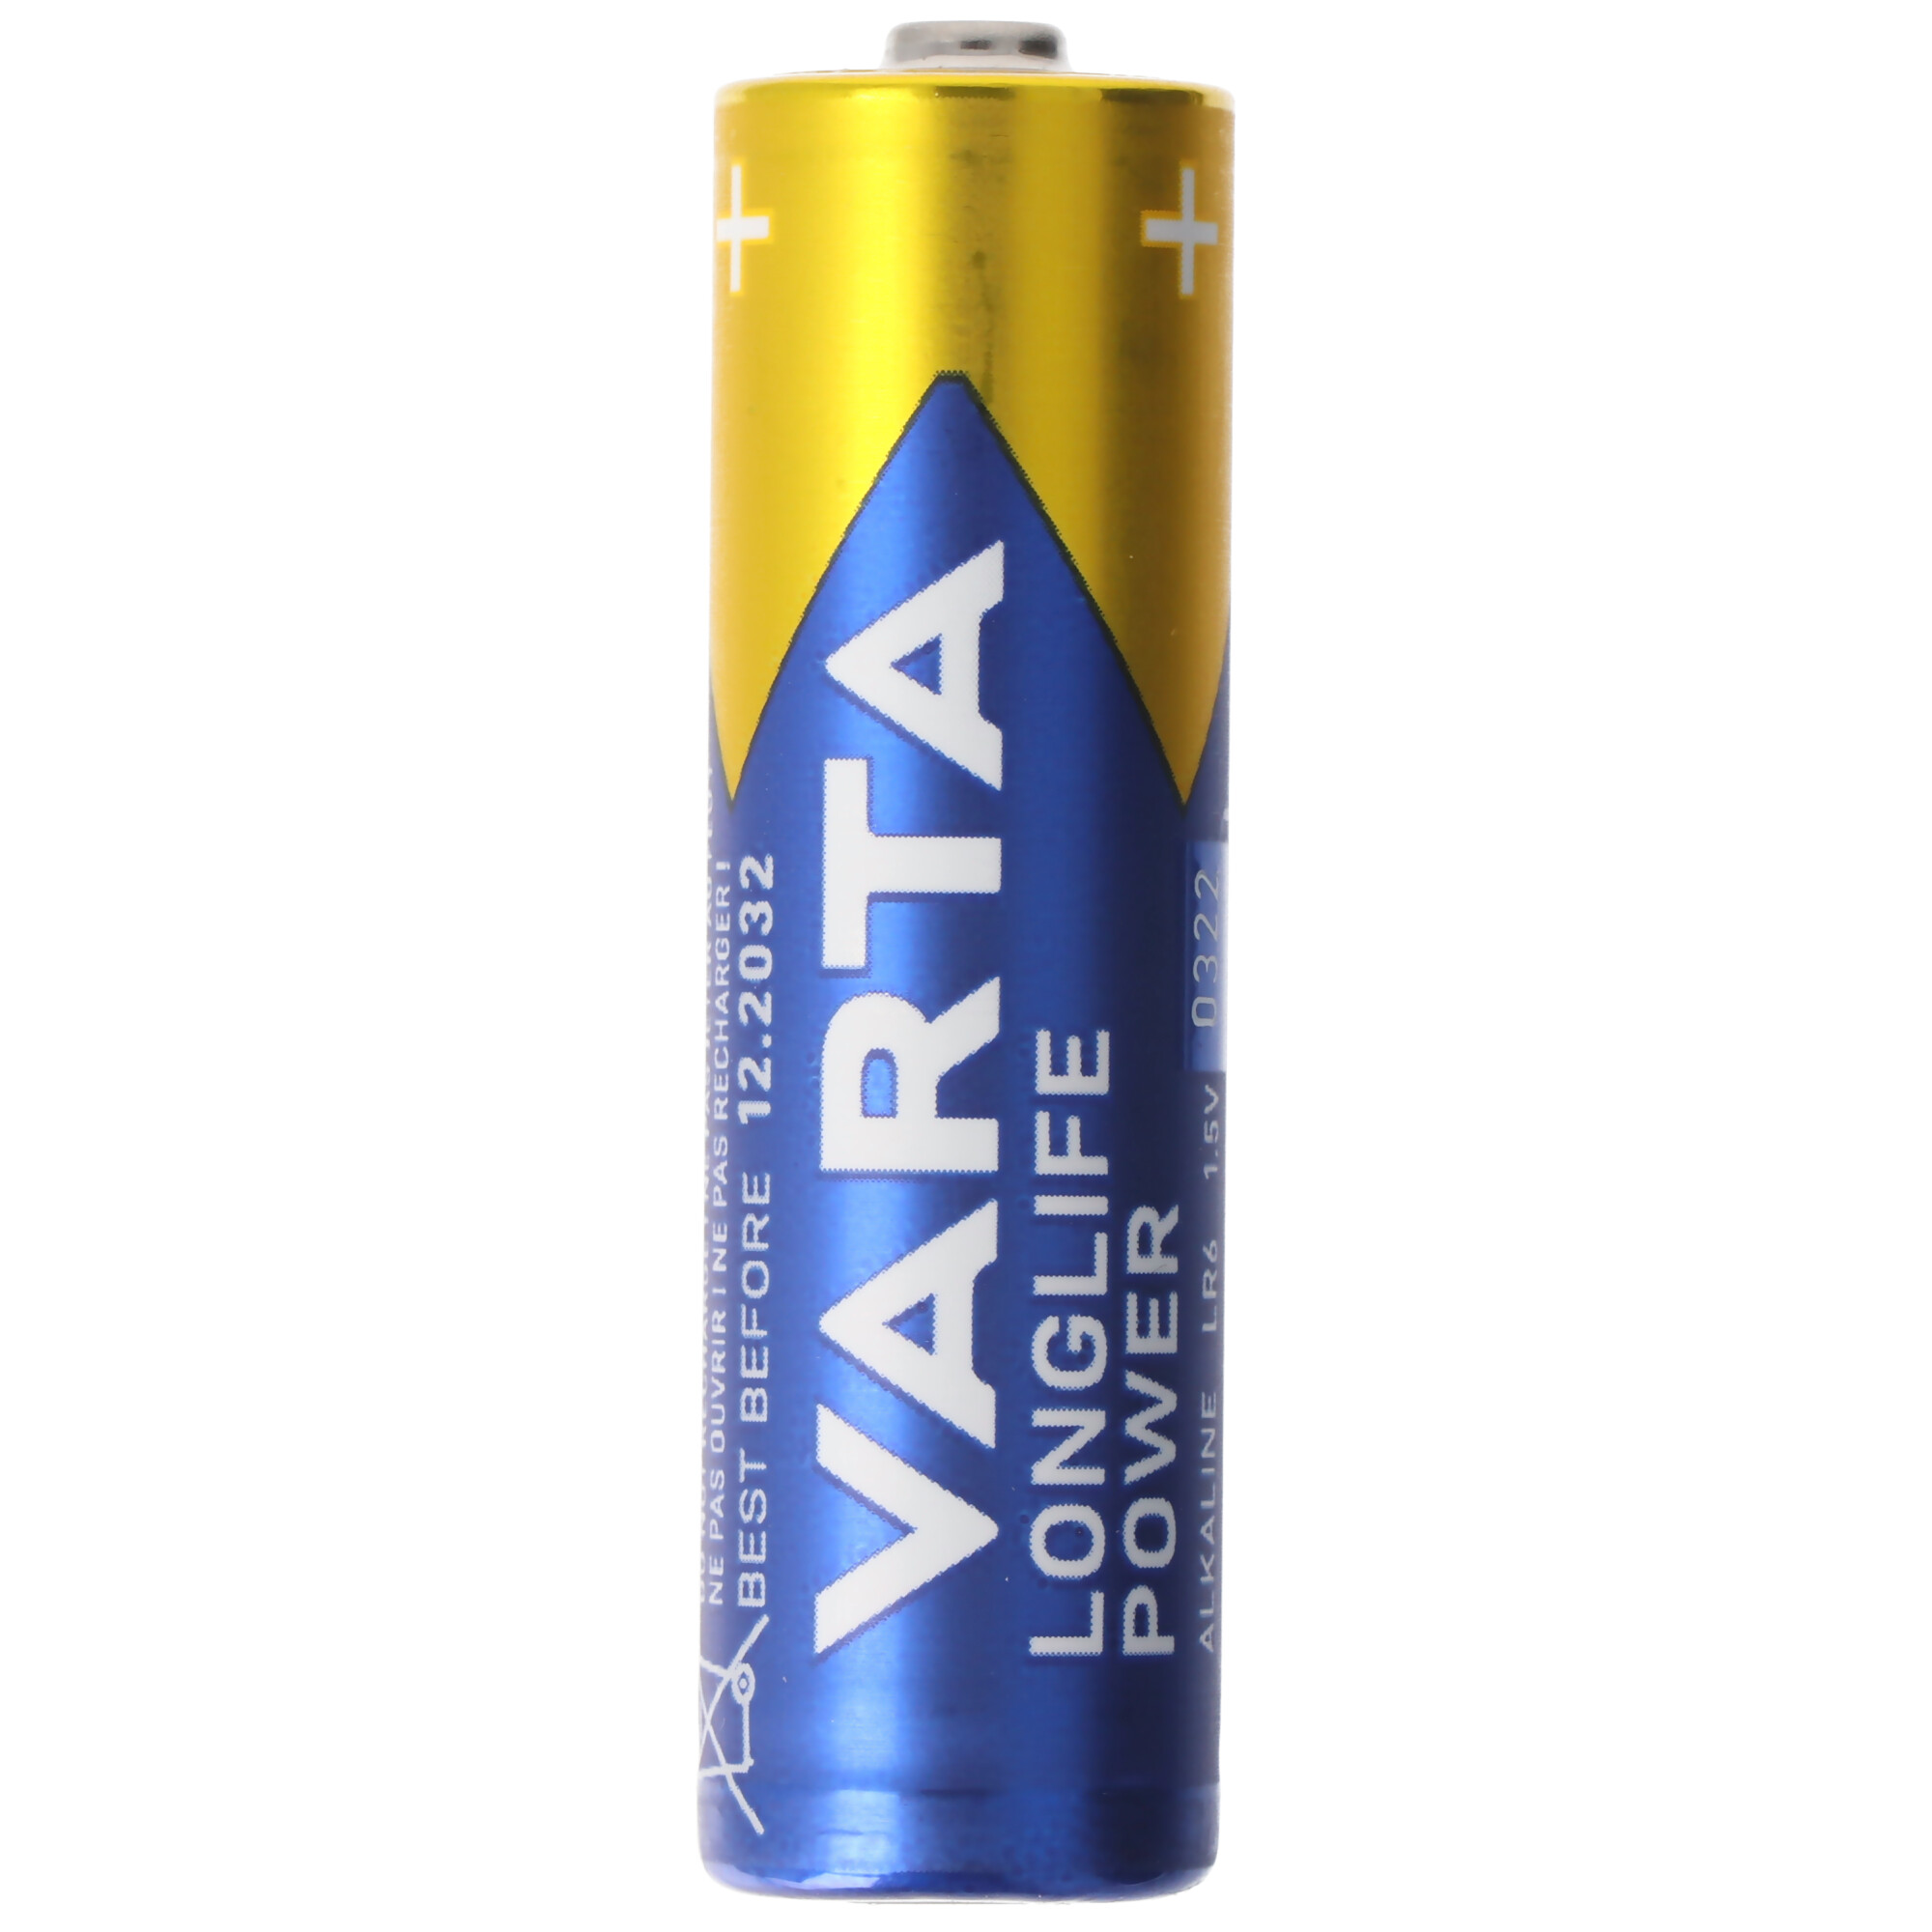 Varta Longlife Power (ehem. High Energy) 4906 Mignon AA Batterien 4er Blister Made in Germany